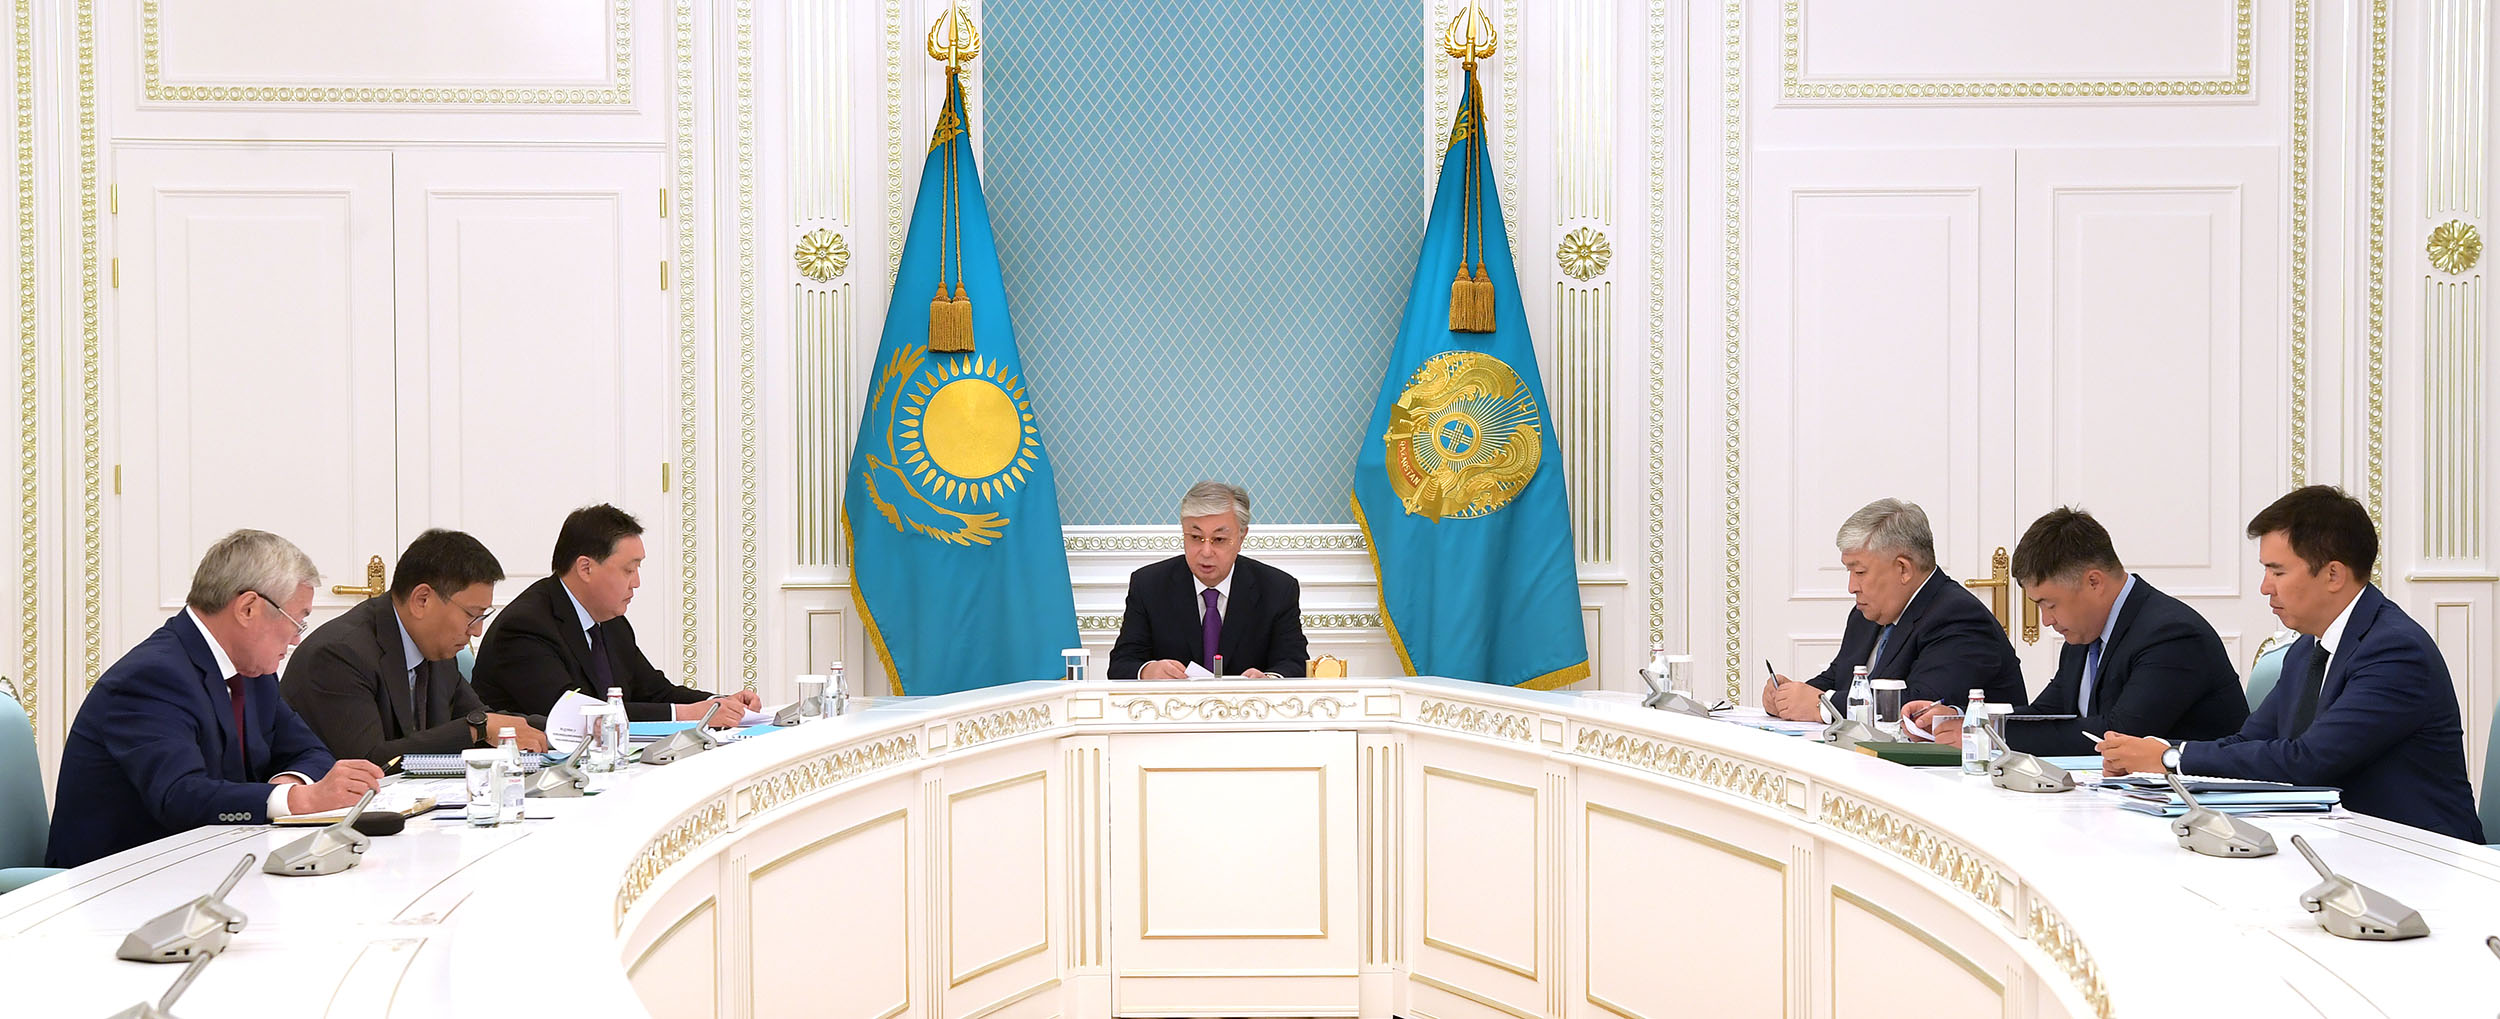 Нұрсұлтан Назарбаевтың төрағалығымен «Nur Otan» партиясының Саяси кеңесі Бюросының отырысы өтті